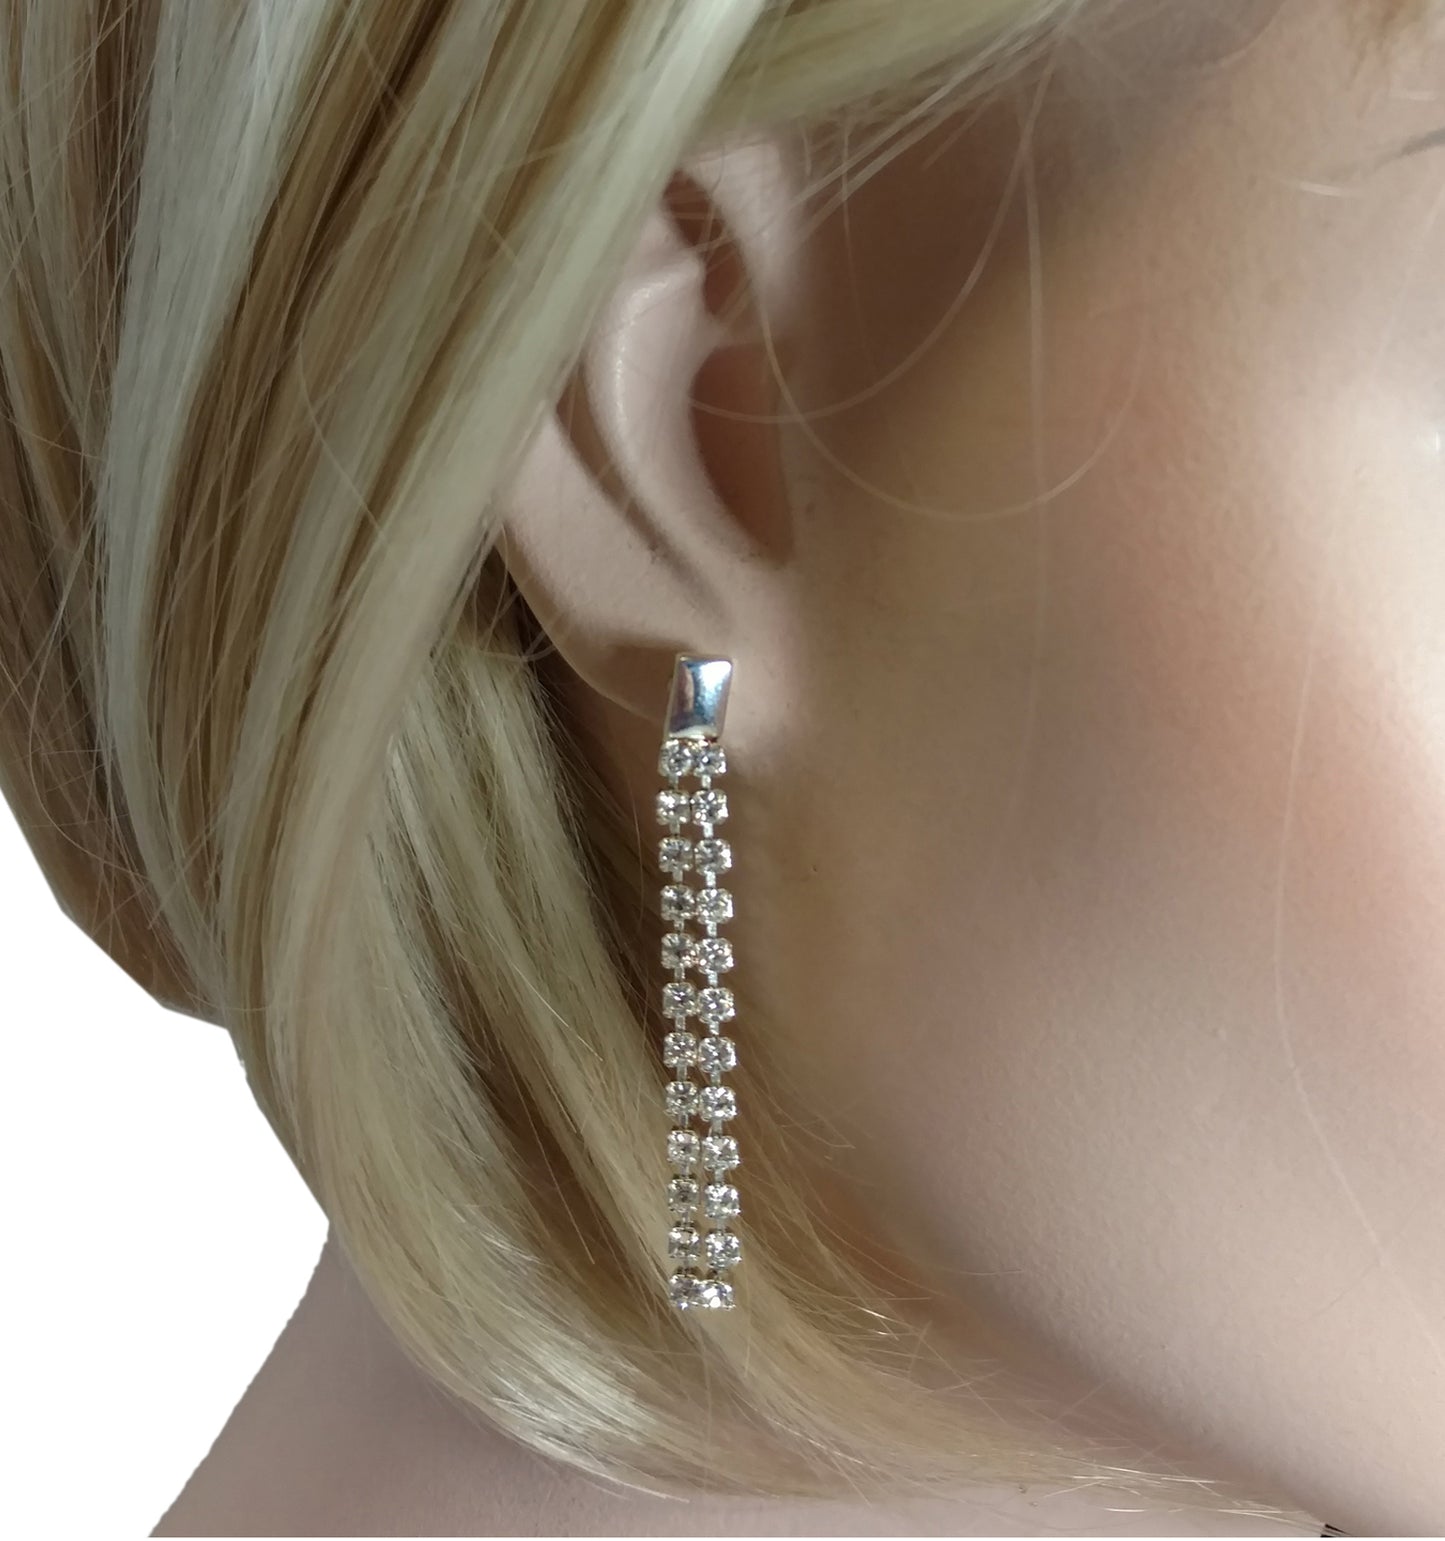 Sostanza Rhinestone Silver Tone Chandelier Dangle Earrings Pierced 2"